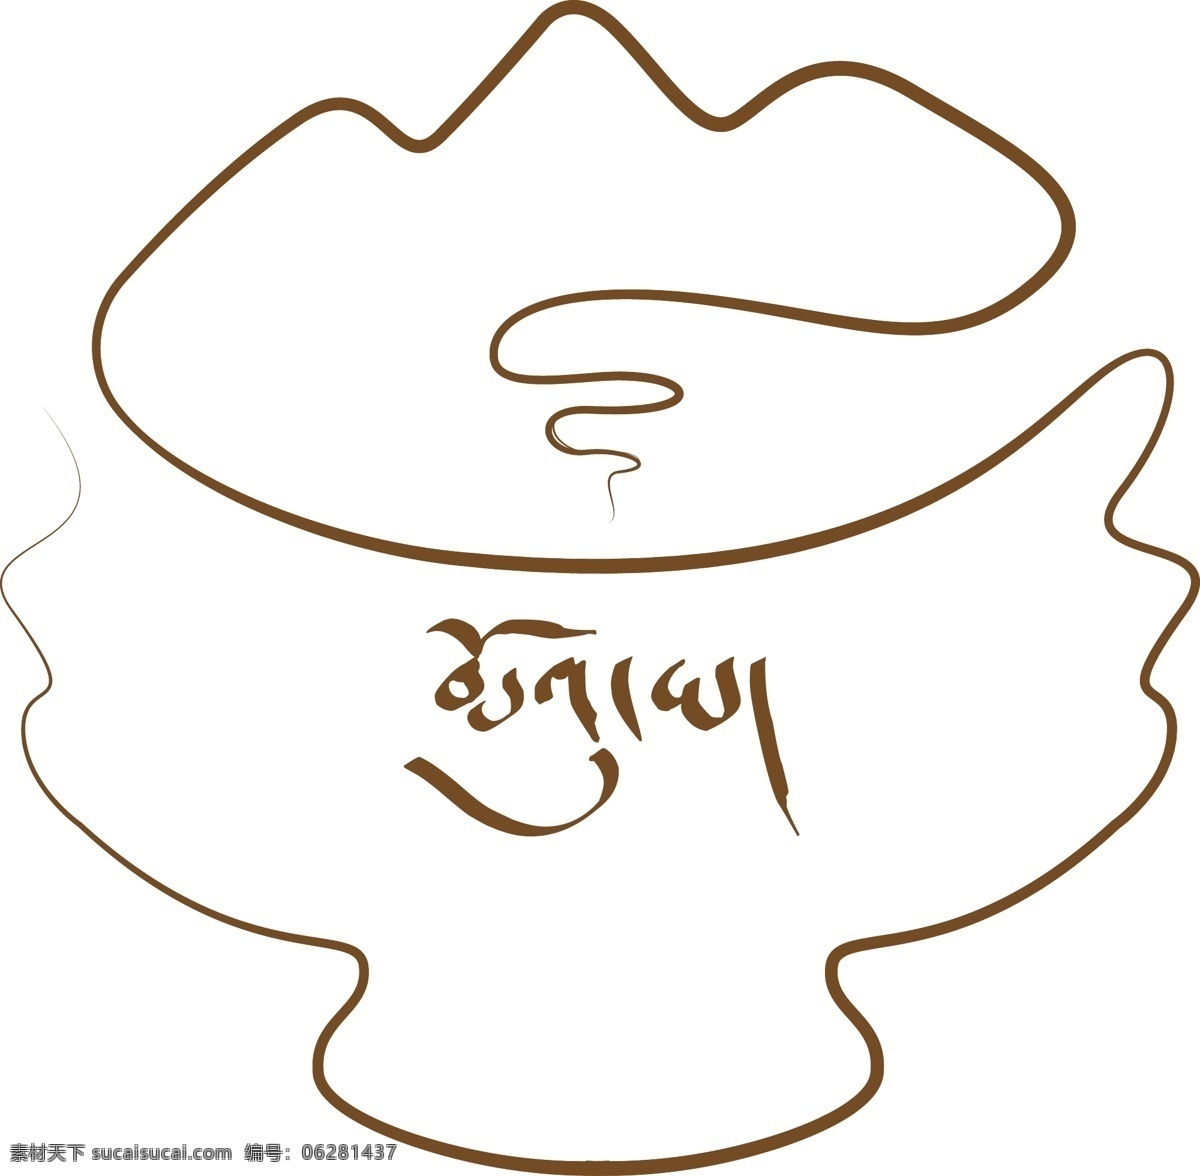 牧 雅 logo 西藏文化风格 西藏神工作室 咖啡